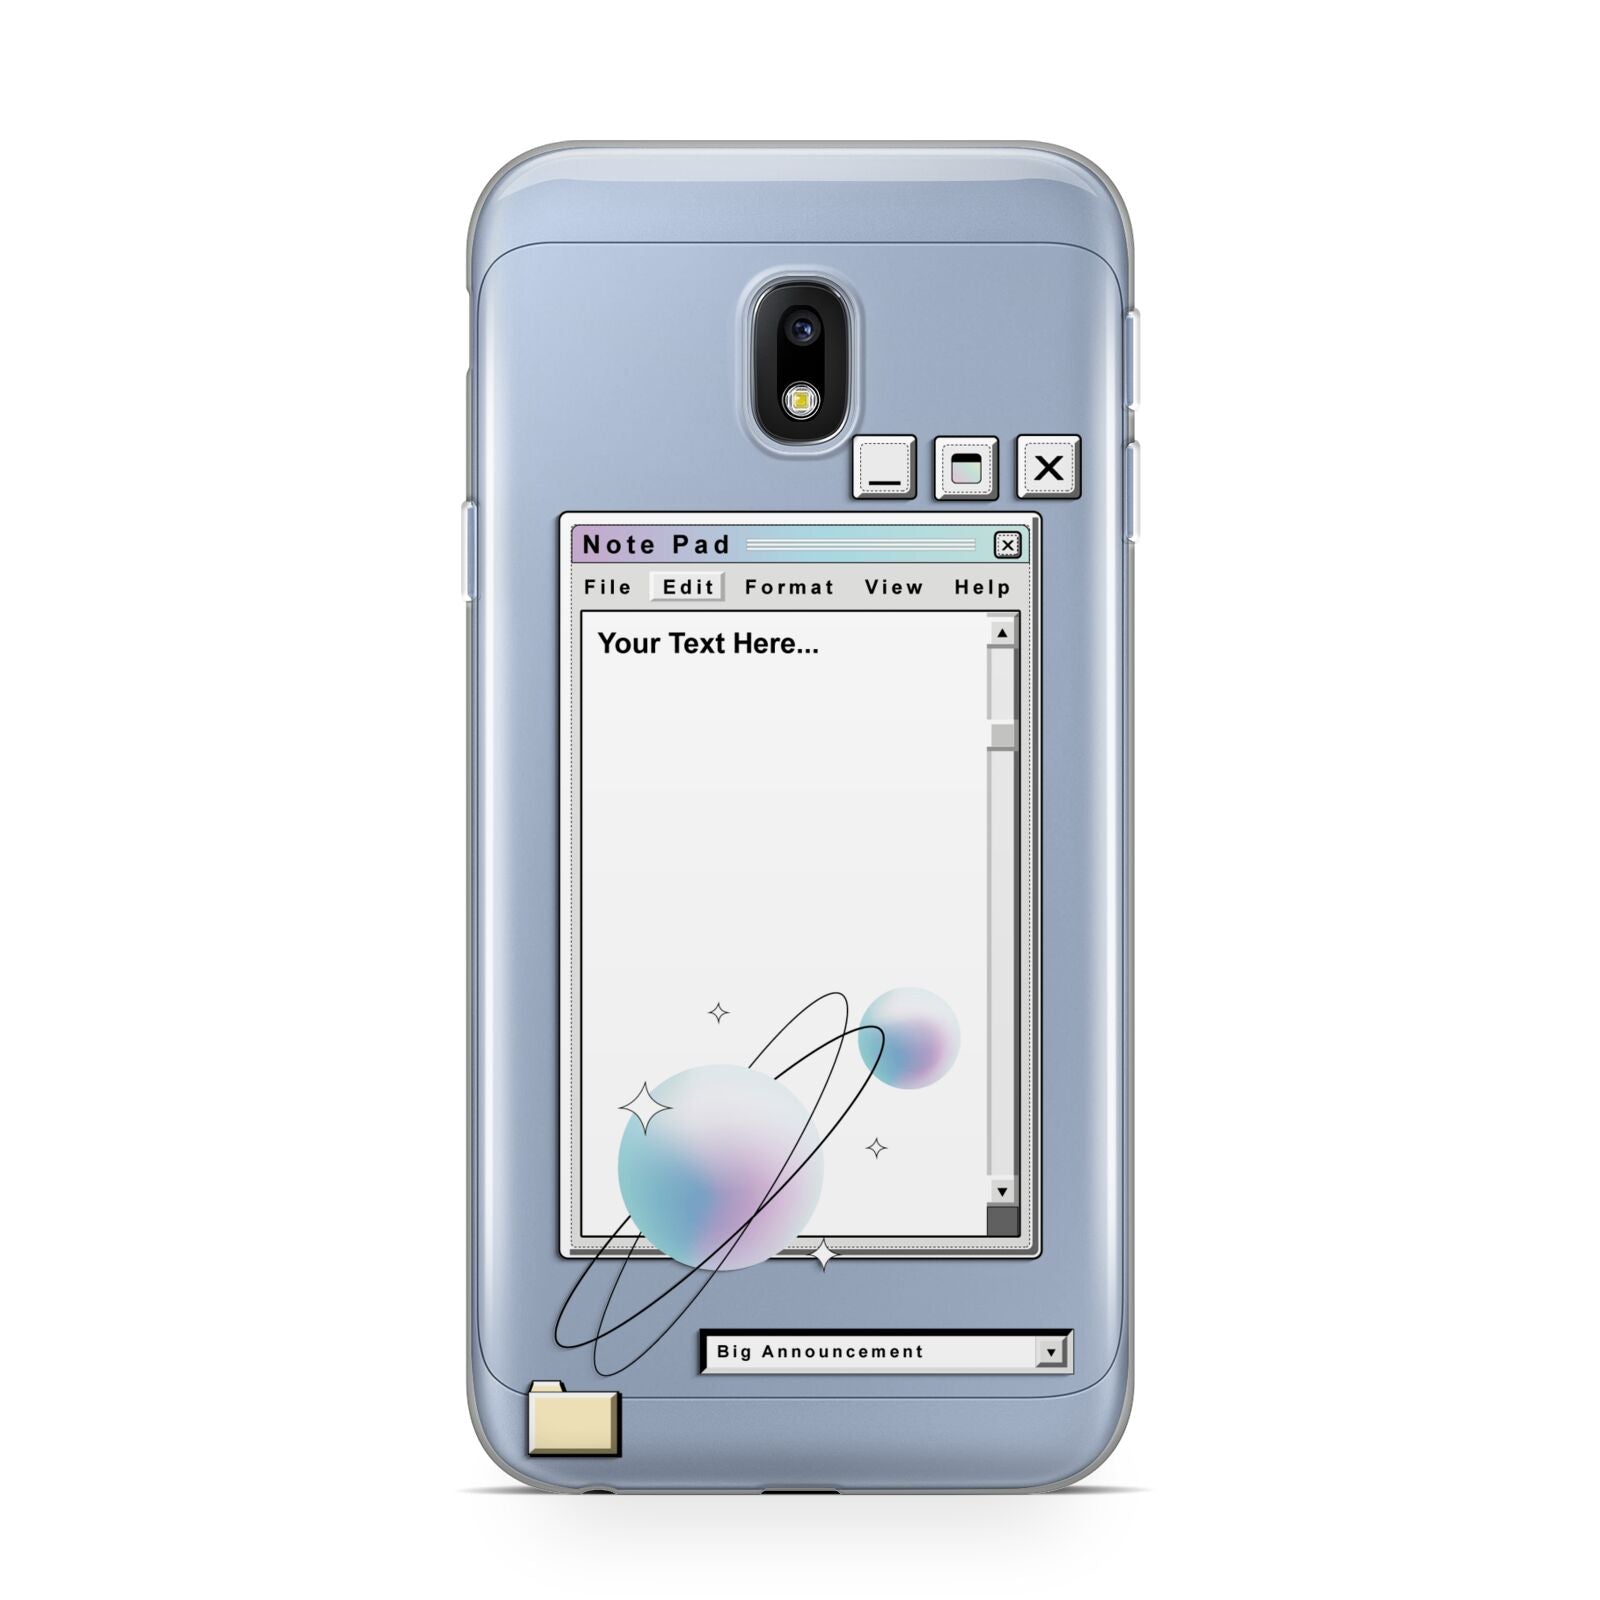 Retro Note Pad Samsung Galaxy J3 2017 Case